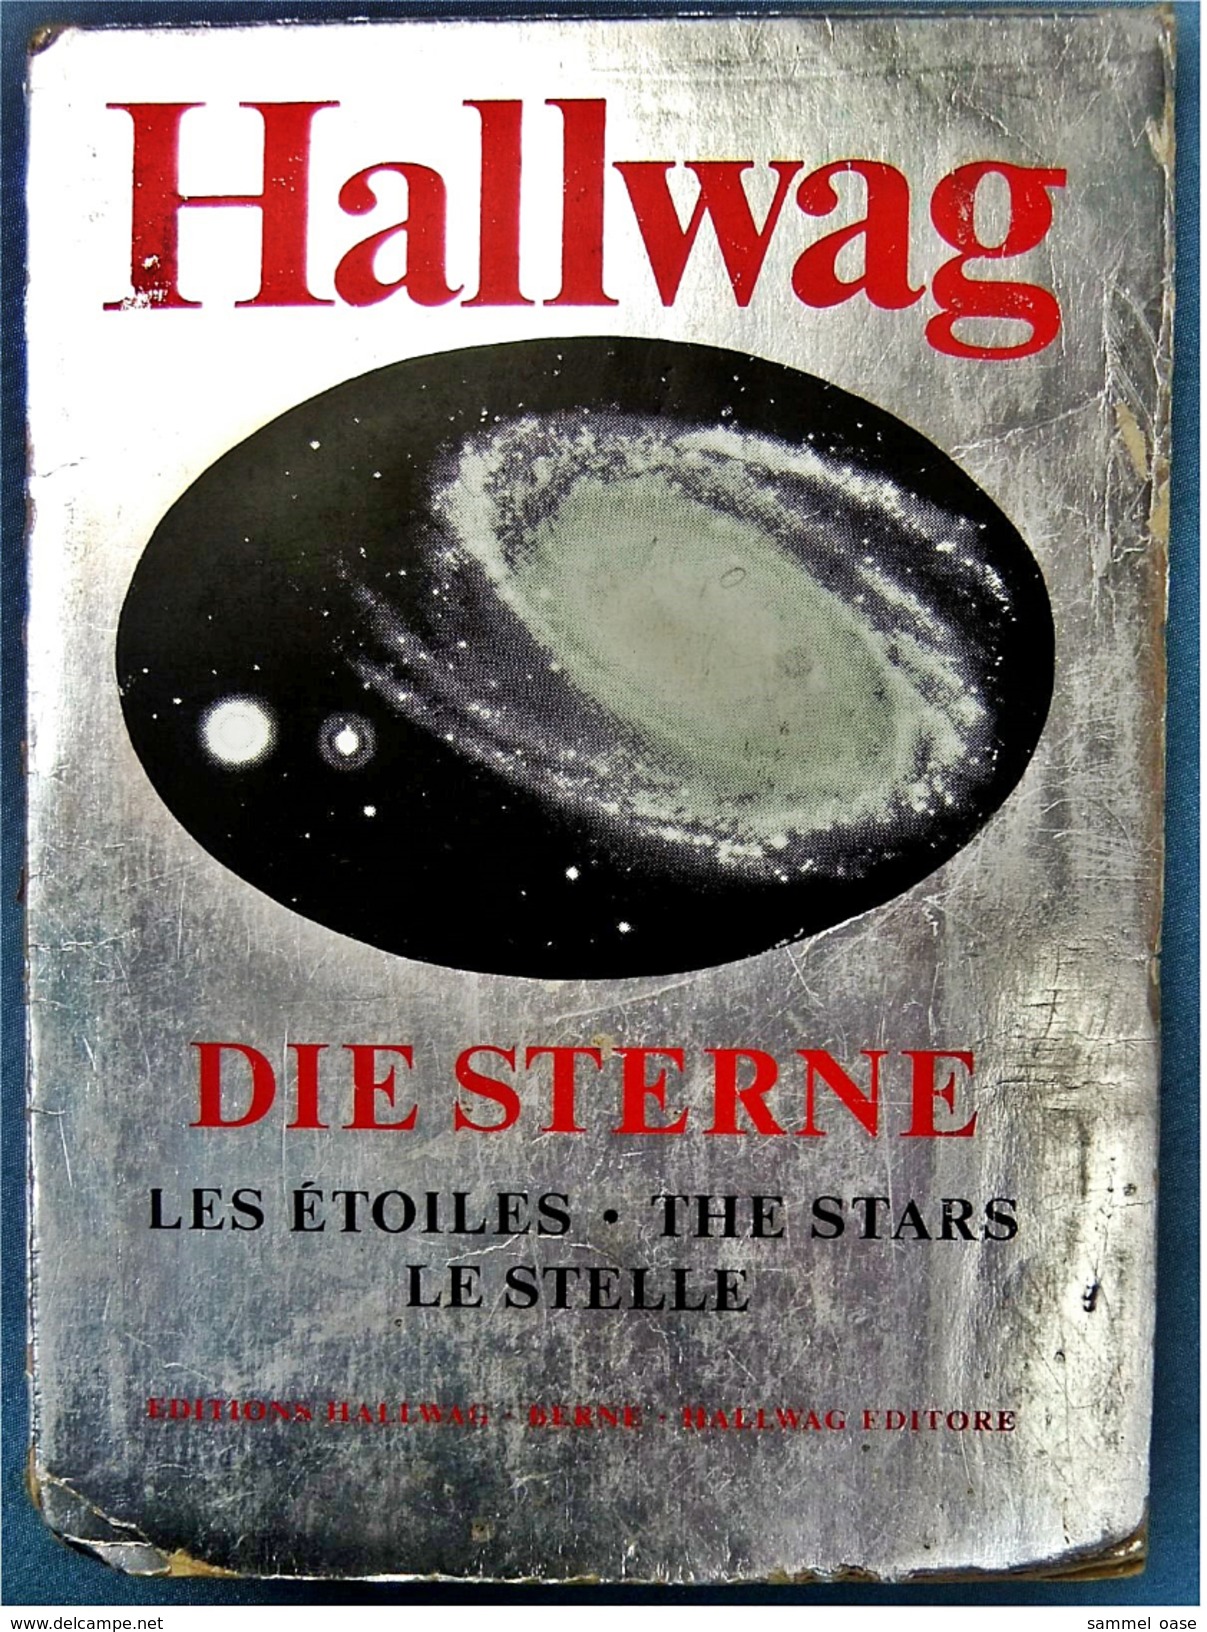 Hallwag Faltkarte / Plakat : Die Sterne  - ca. 125 x 84 cm  -  von ca. 1985